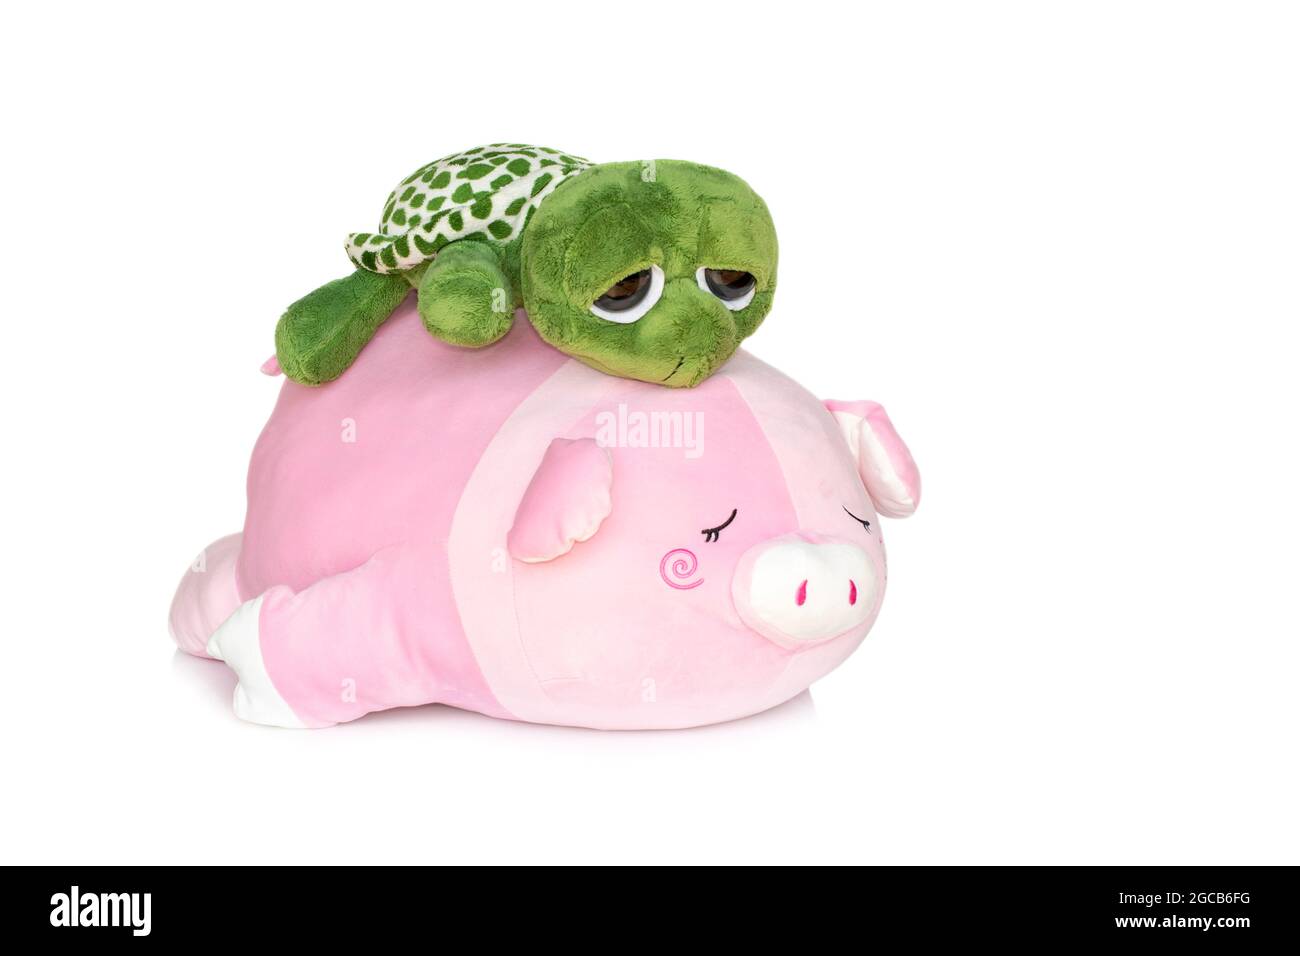 Image de poupée de tortue sur la poupée de porc arrière isolée sur fond blanc. Poupées animales. Banque D'Images